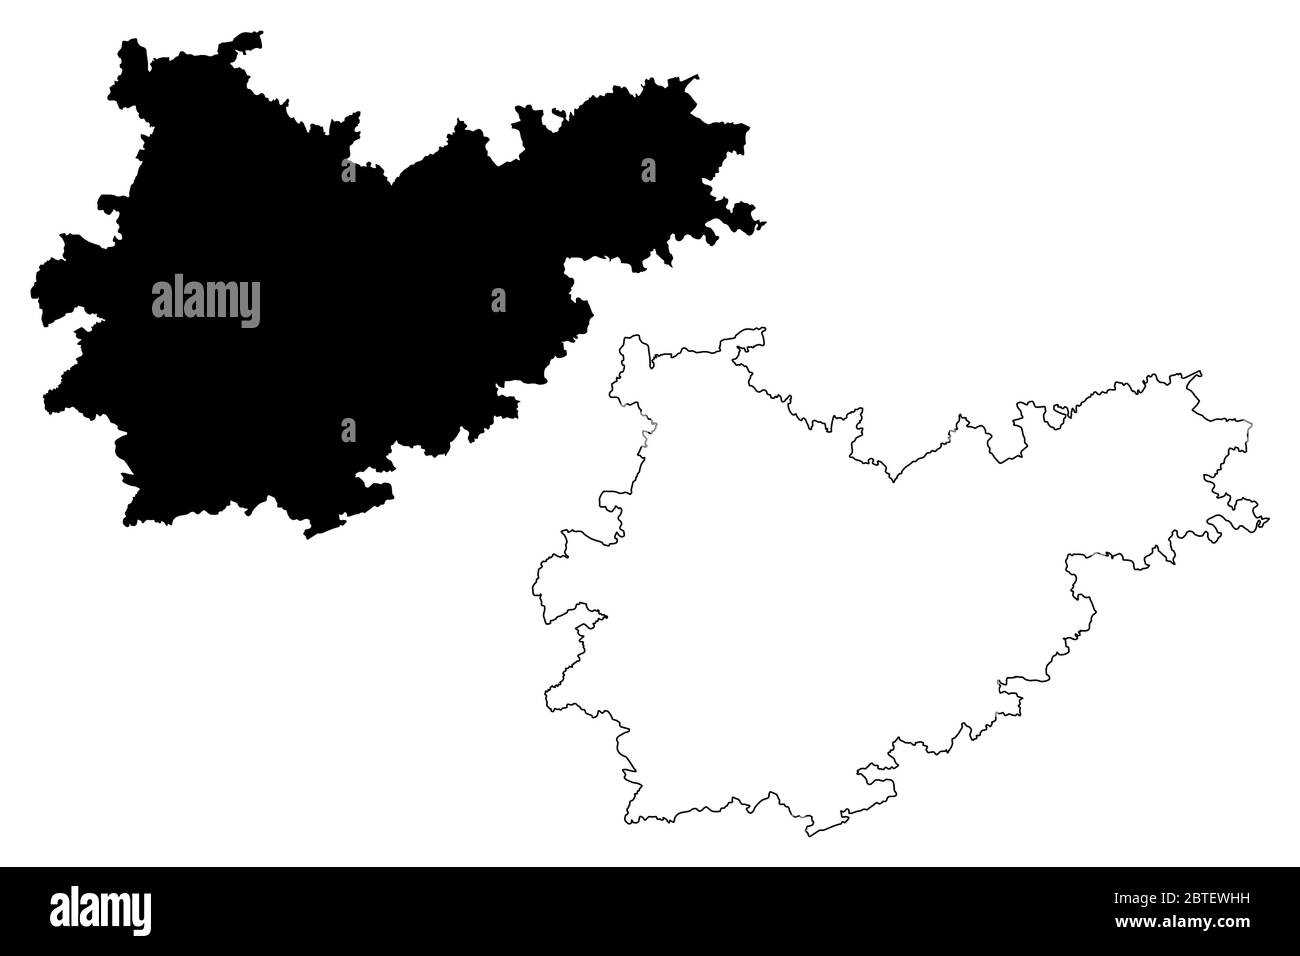 Tarn-et-Garonne Department (Frankreich, Frankreich, Frankreich, Okzitanien oder Okzitanien Region) Karte Vektorgrafik, Skizze Tarn et Garonne Karte Stock Vektor